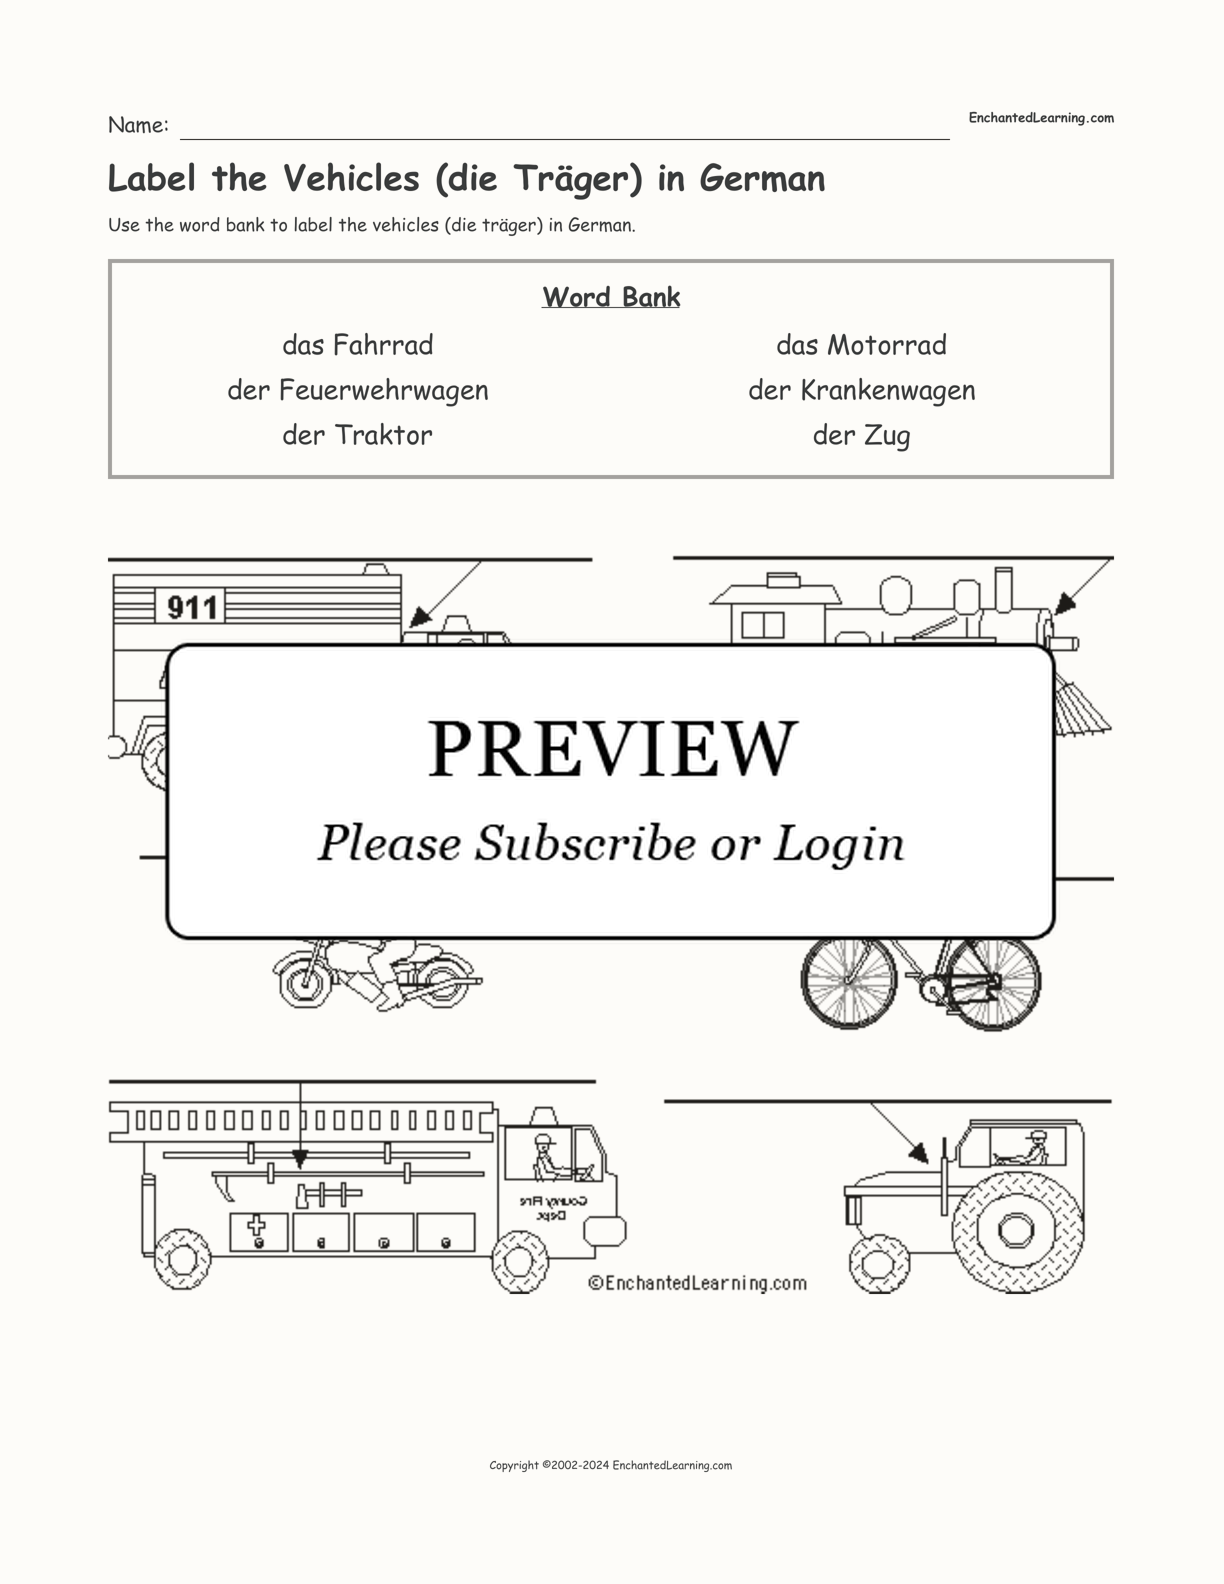 Label the Vehicles (die Träger) in German interactive worksheet page 1